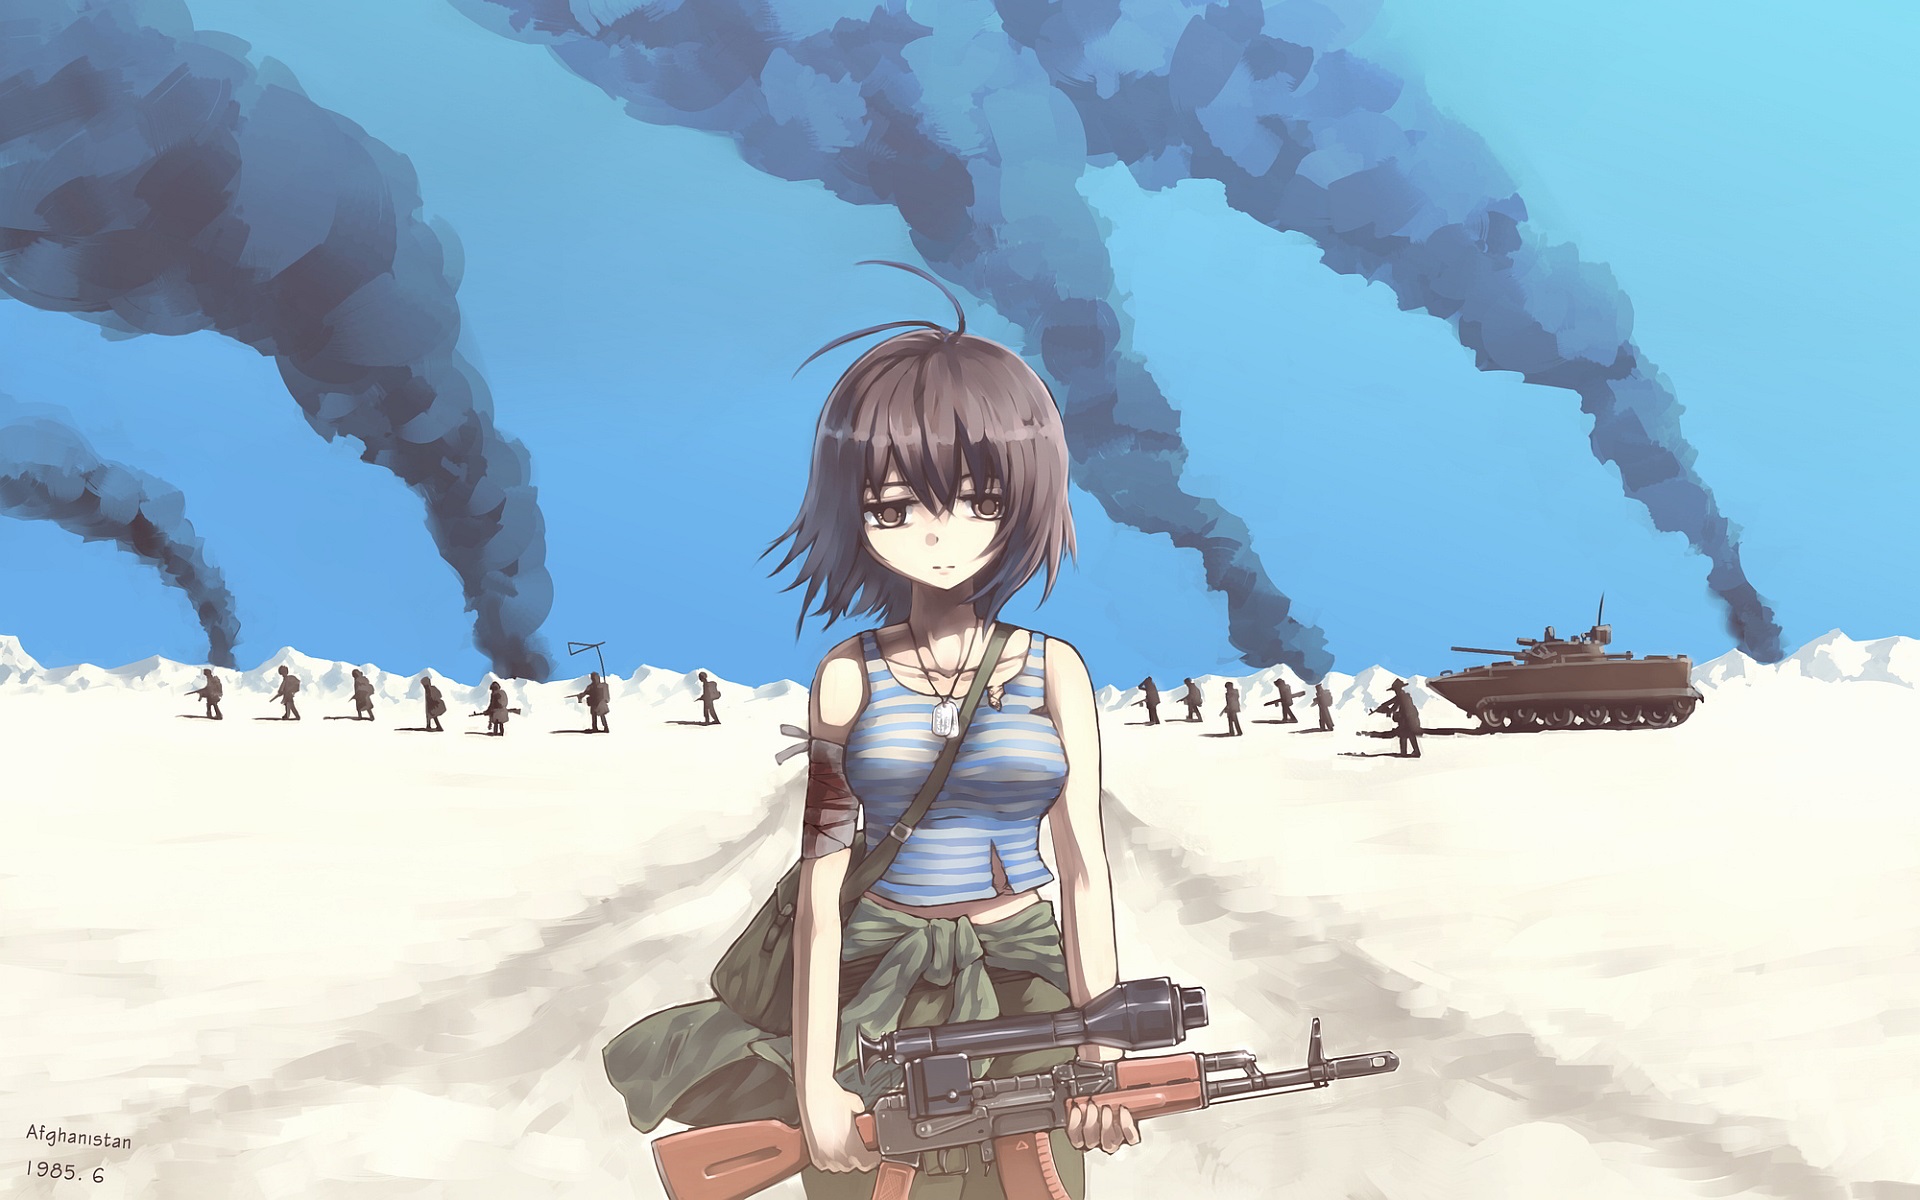 fondo de pantalla de chica del ejército,juego de acción y aventura,cg artwork,anime,dibujos animados,ilustración